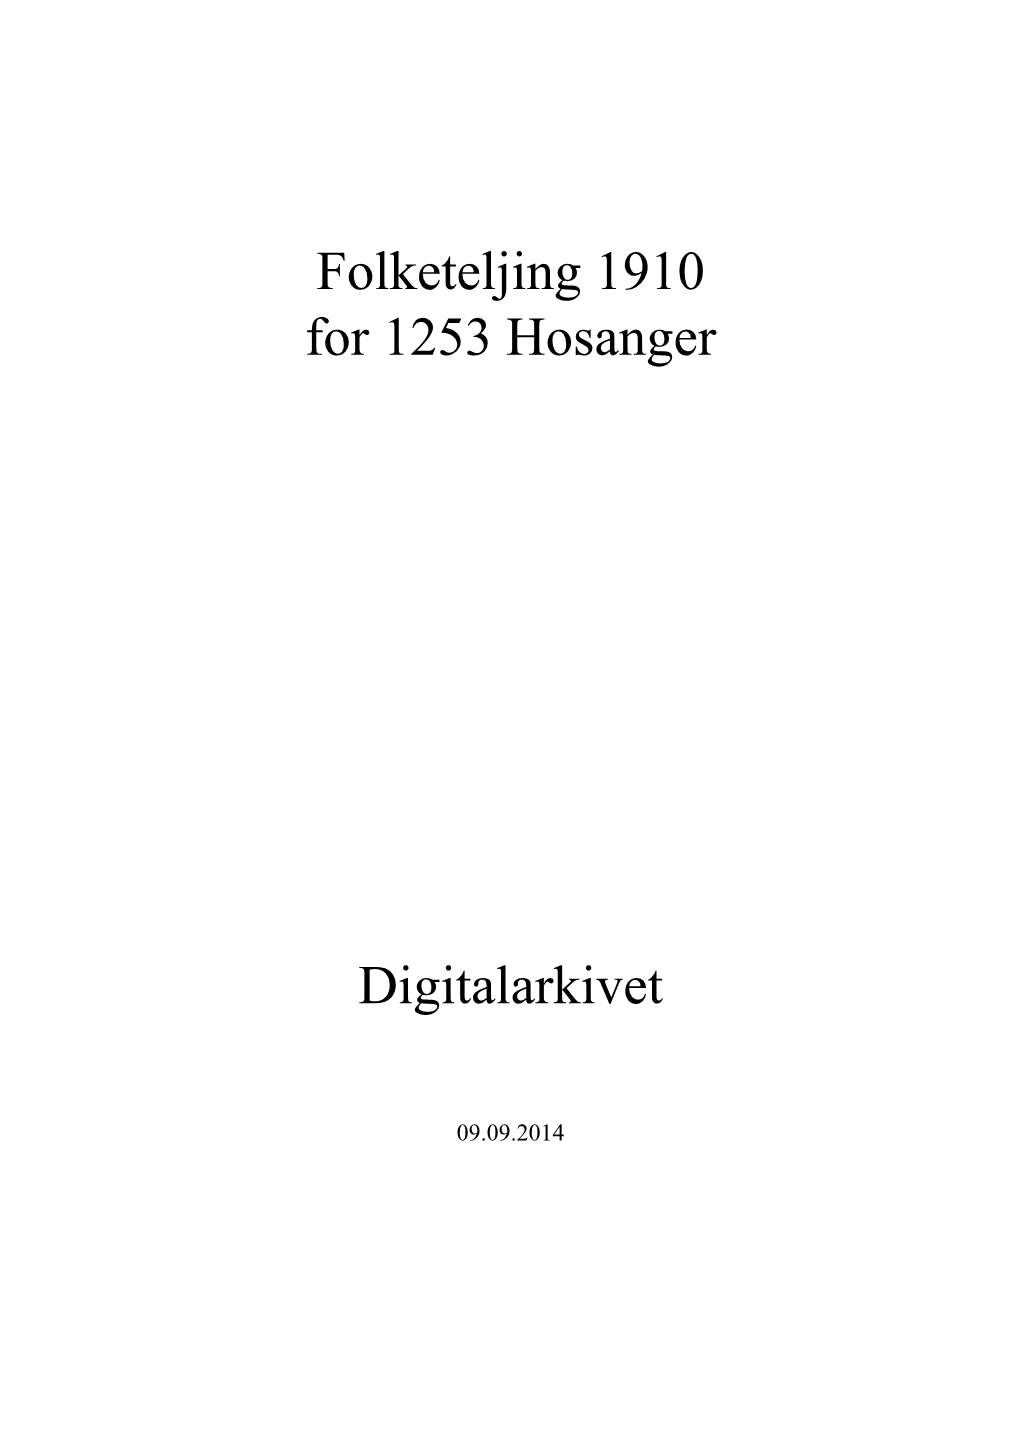 Folketeljing 1910 for 1253 Hosanger Digitalarkivet